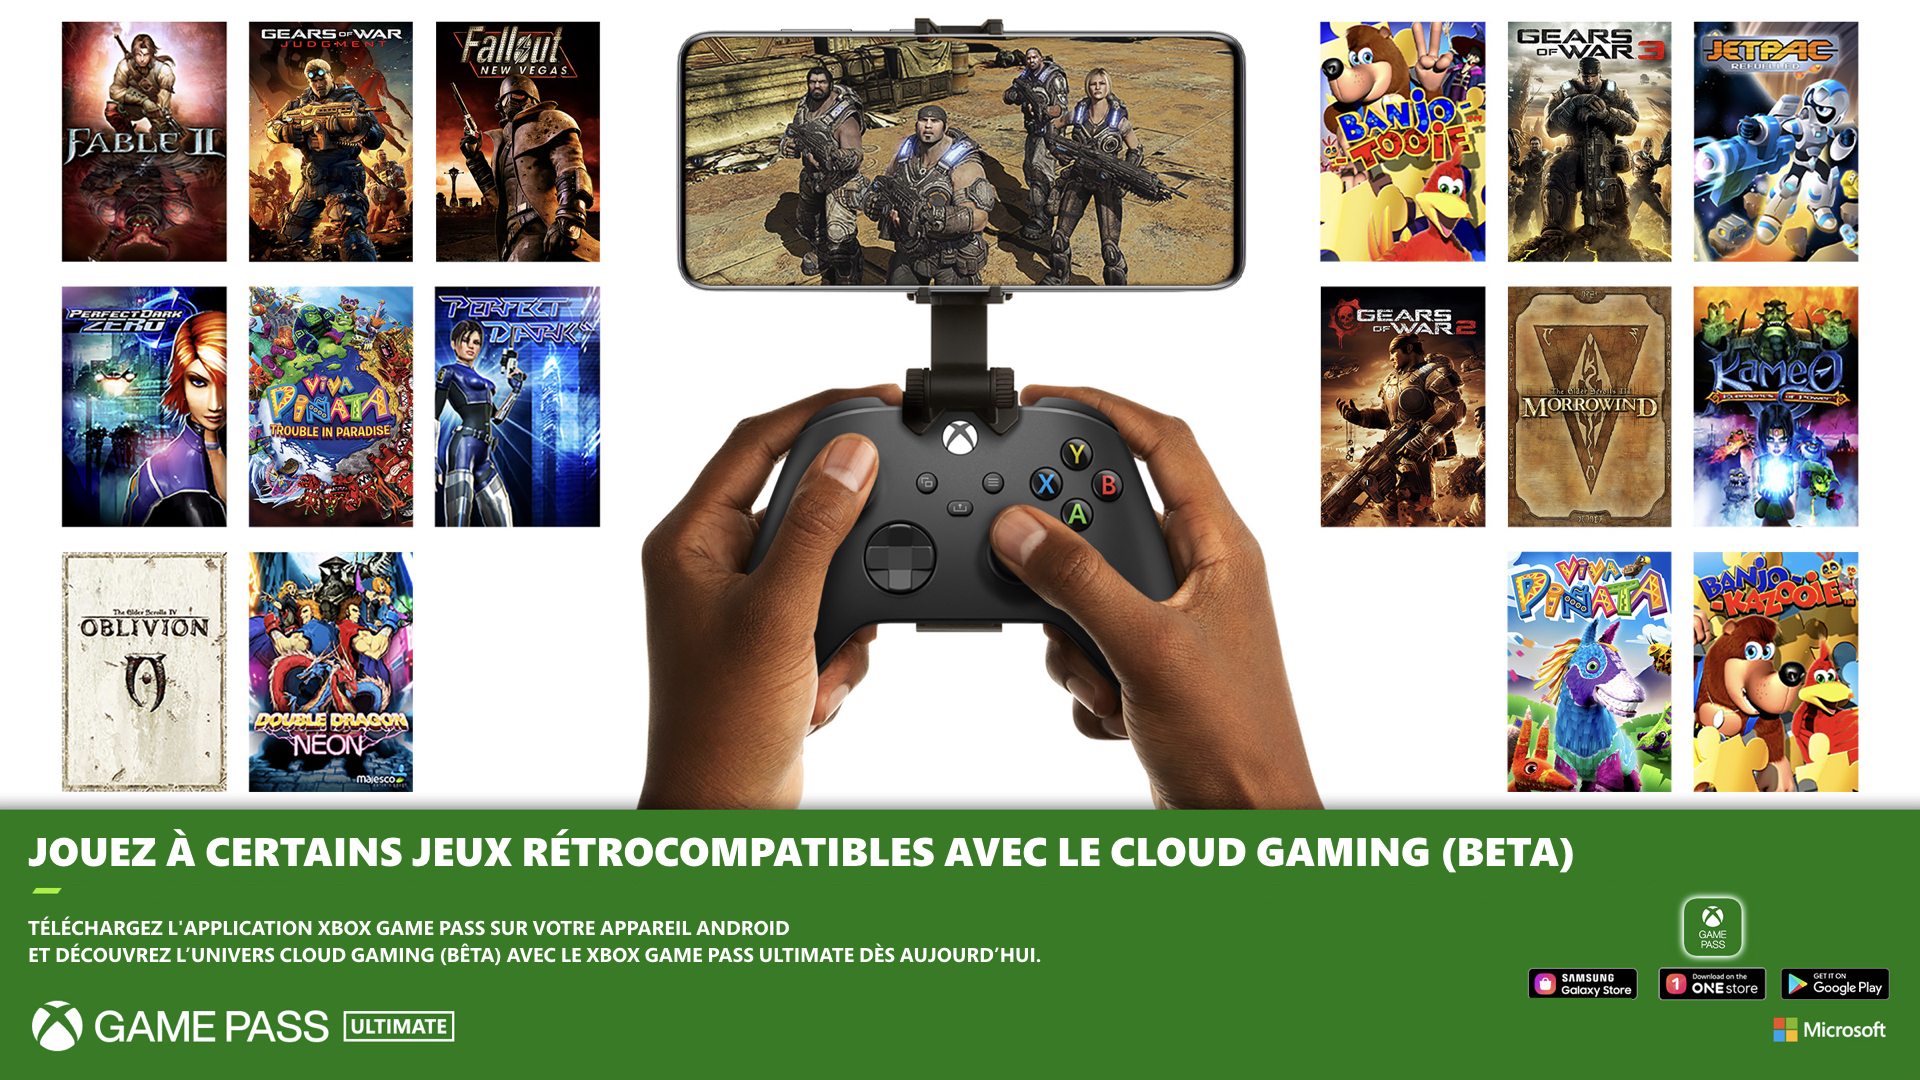 Jouez aux titres rétrocompatibles via le cloud grâce au Xbox Game Pass Ultimate